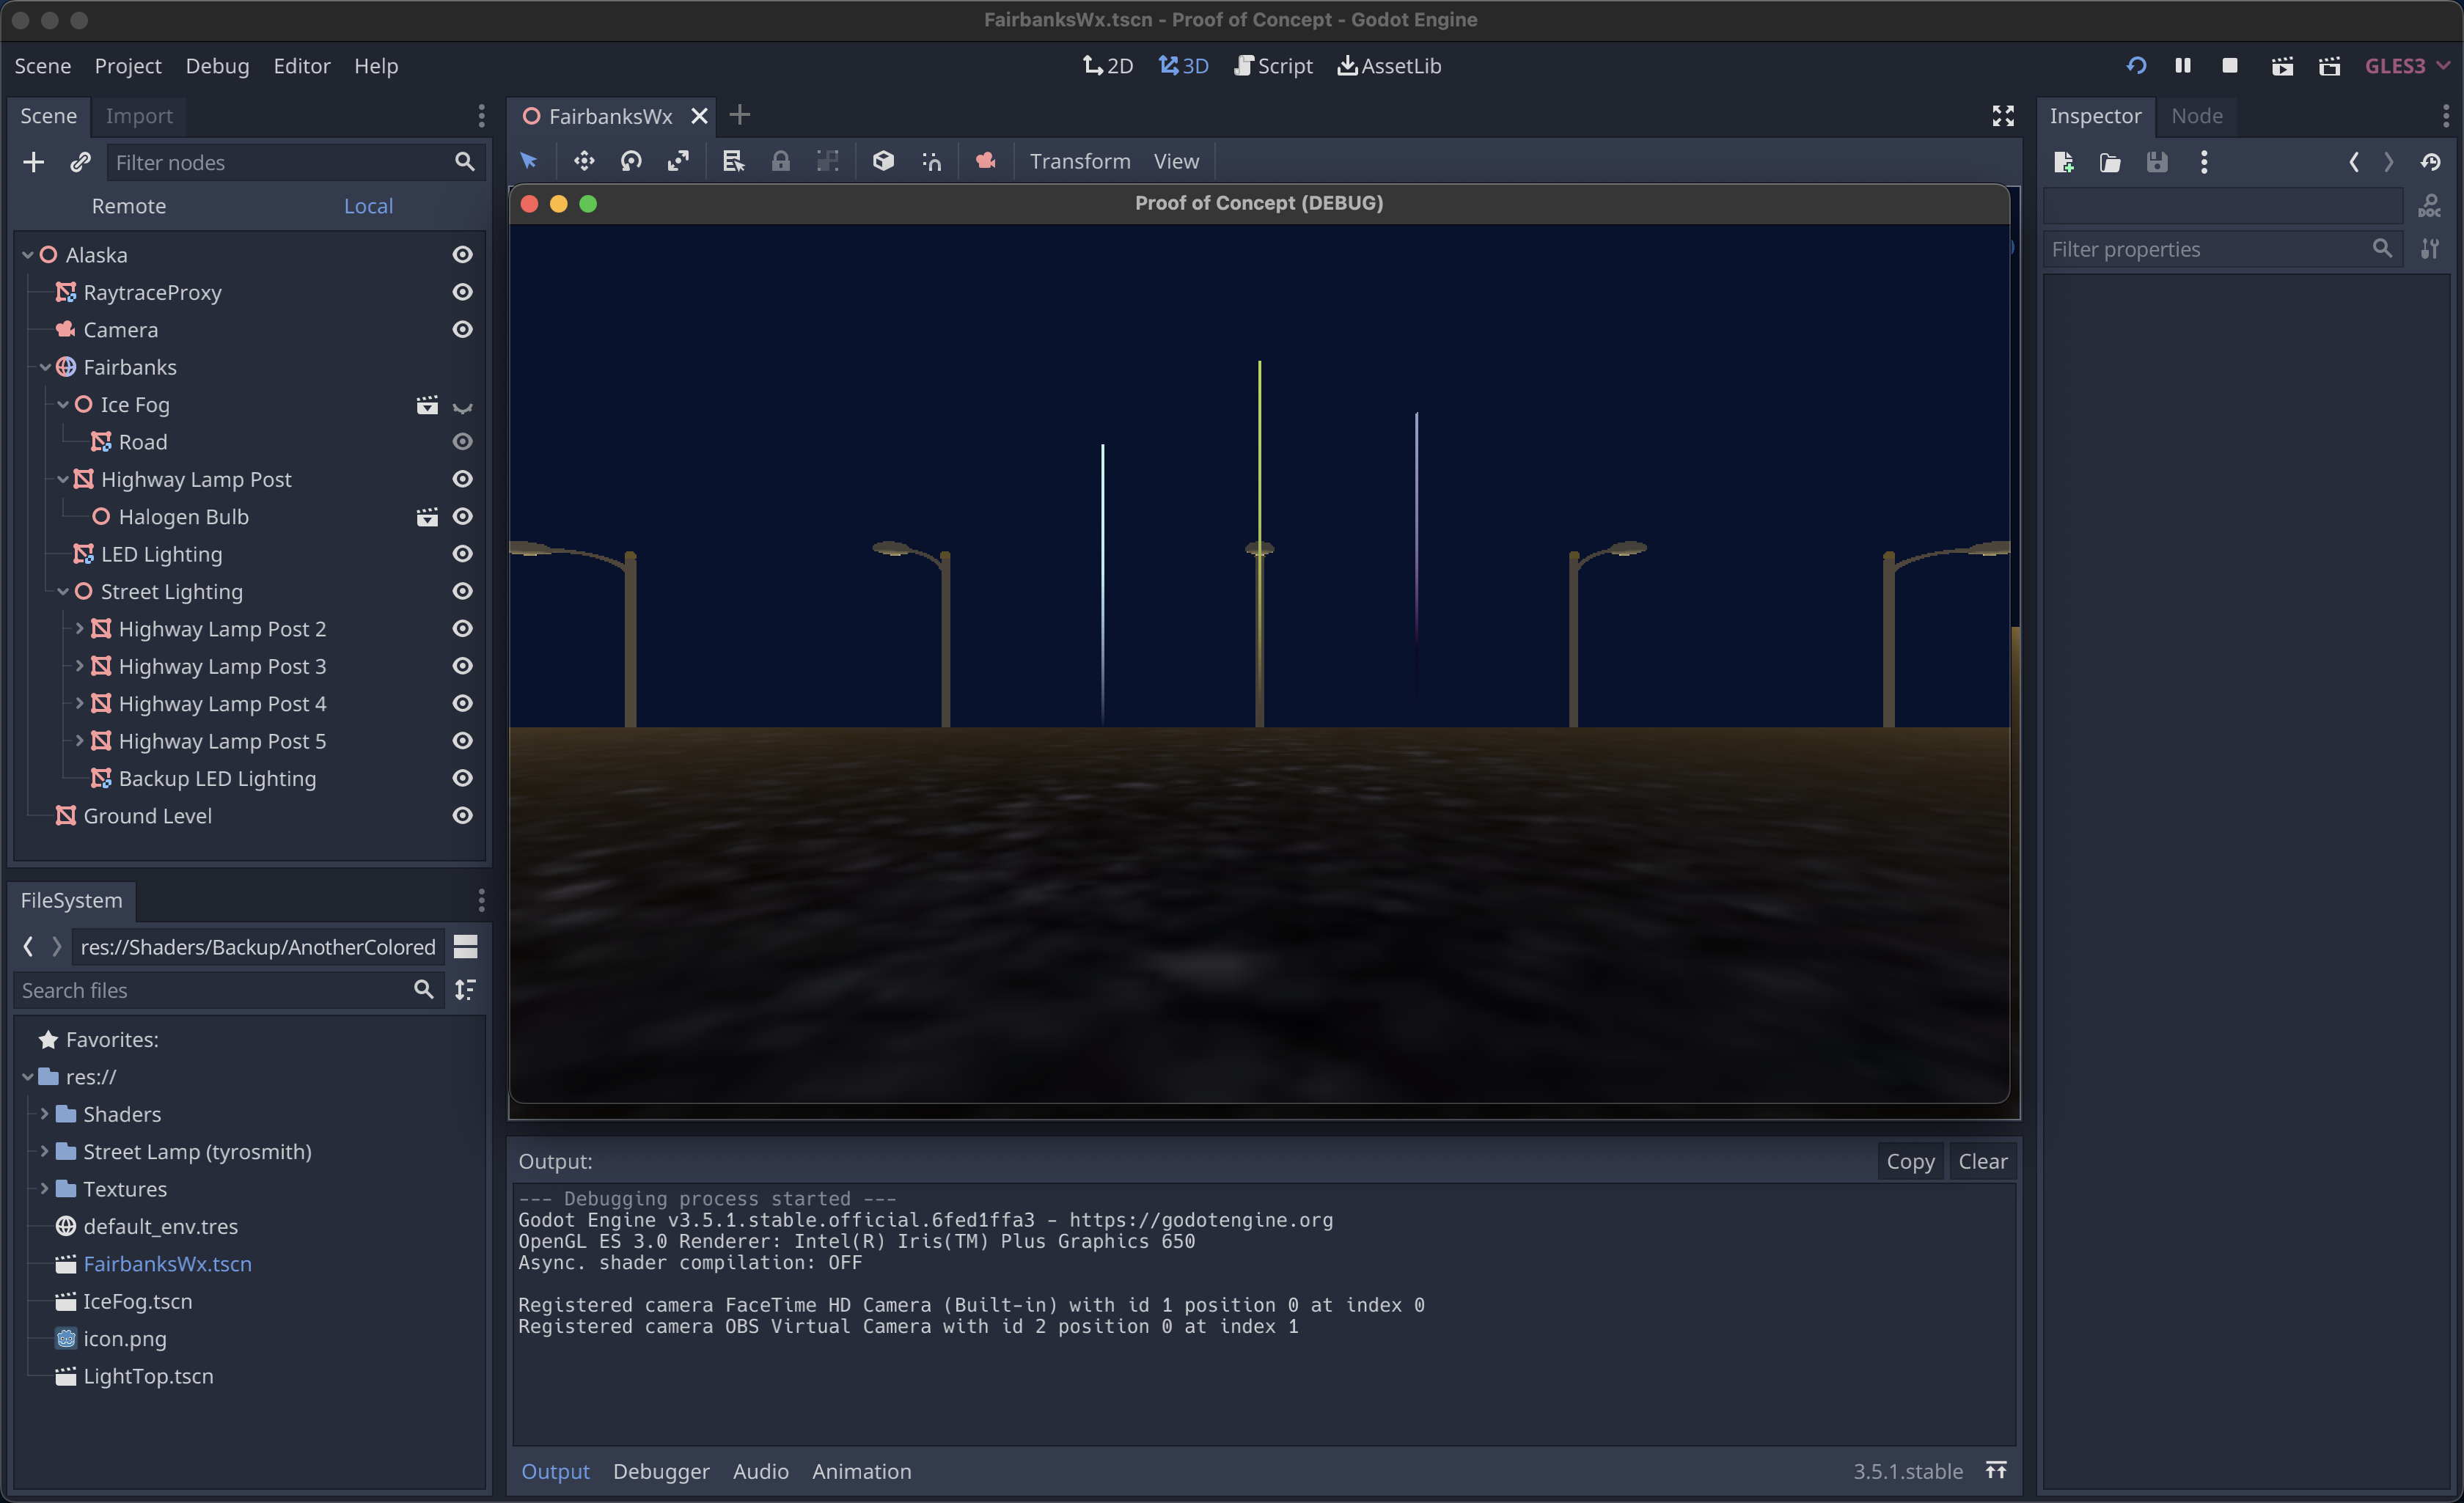 Final Screenshot of Light Pillars Project